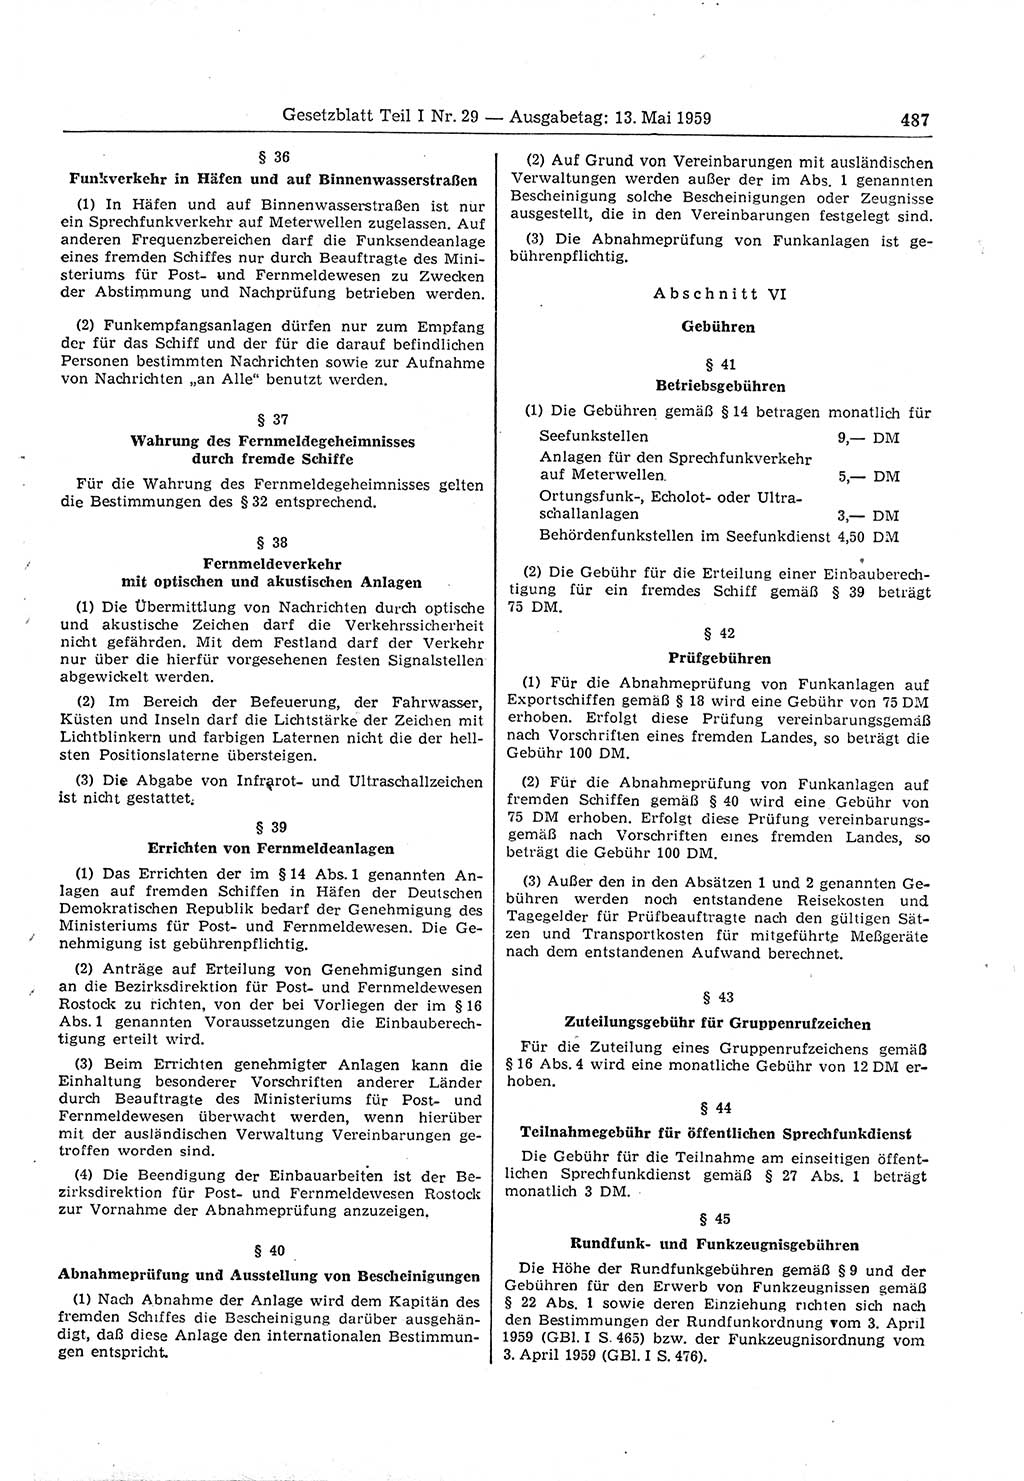 Gesetzblatt (GBl.) der Deutschen Demokratischen Republik (DDR) Teil Ⅰ 1959, Seite 487 (GBl. DDR Ⅰ 1959, S. 487)